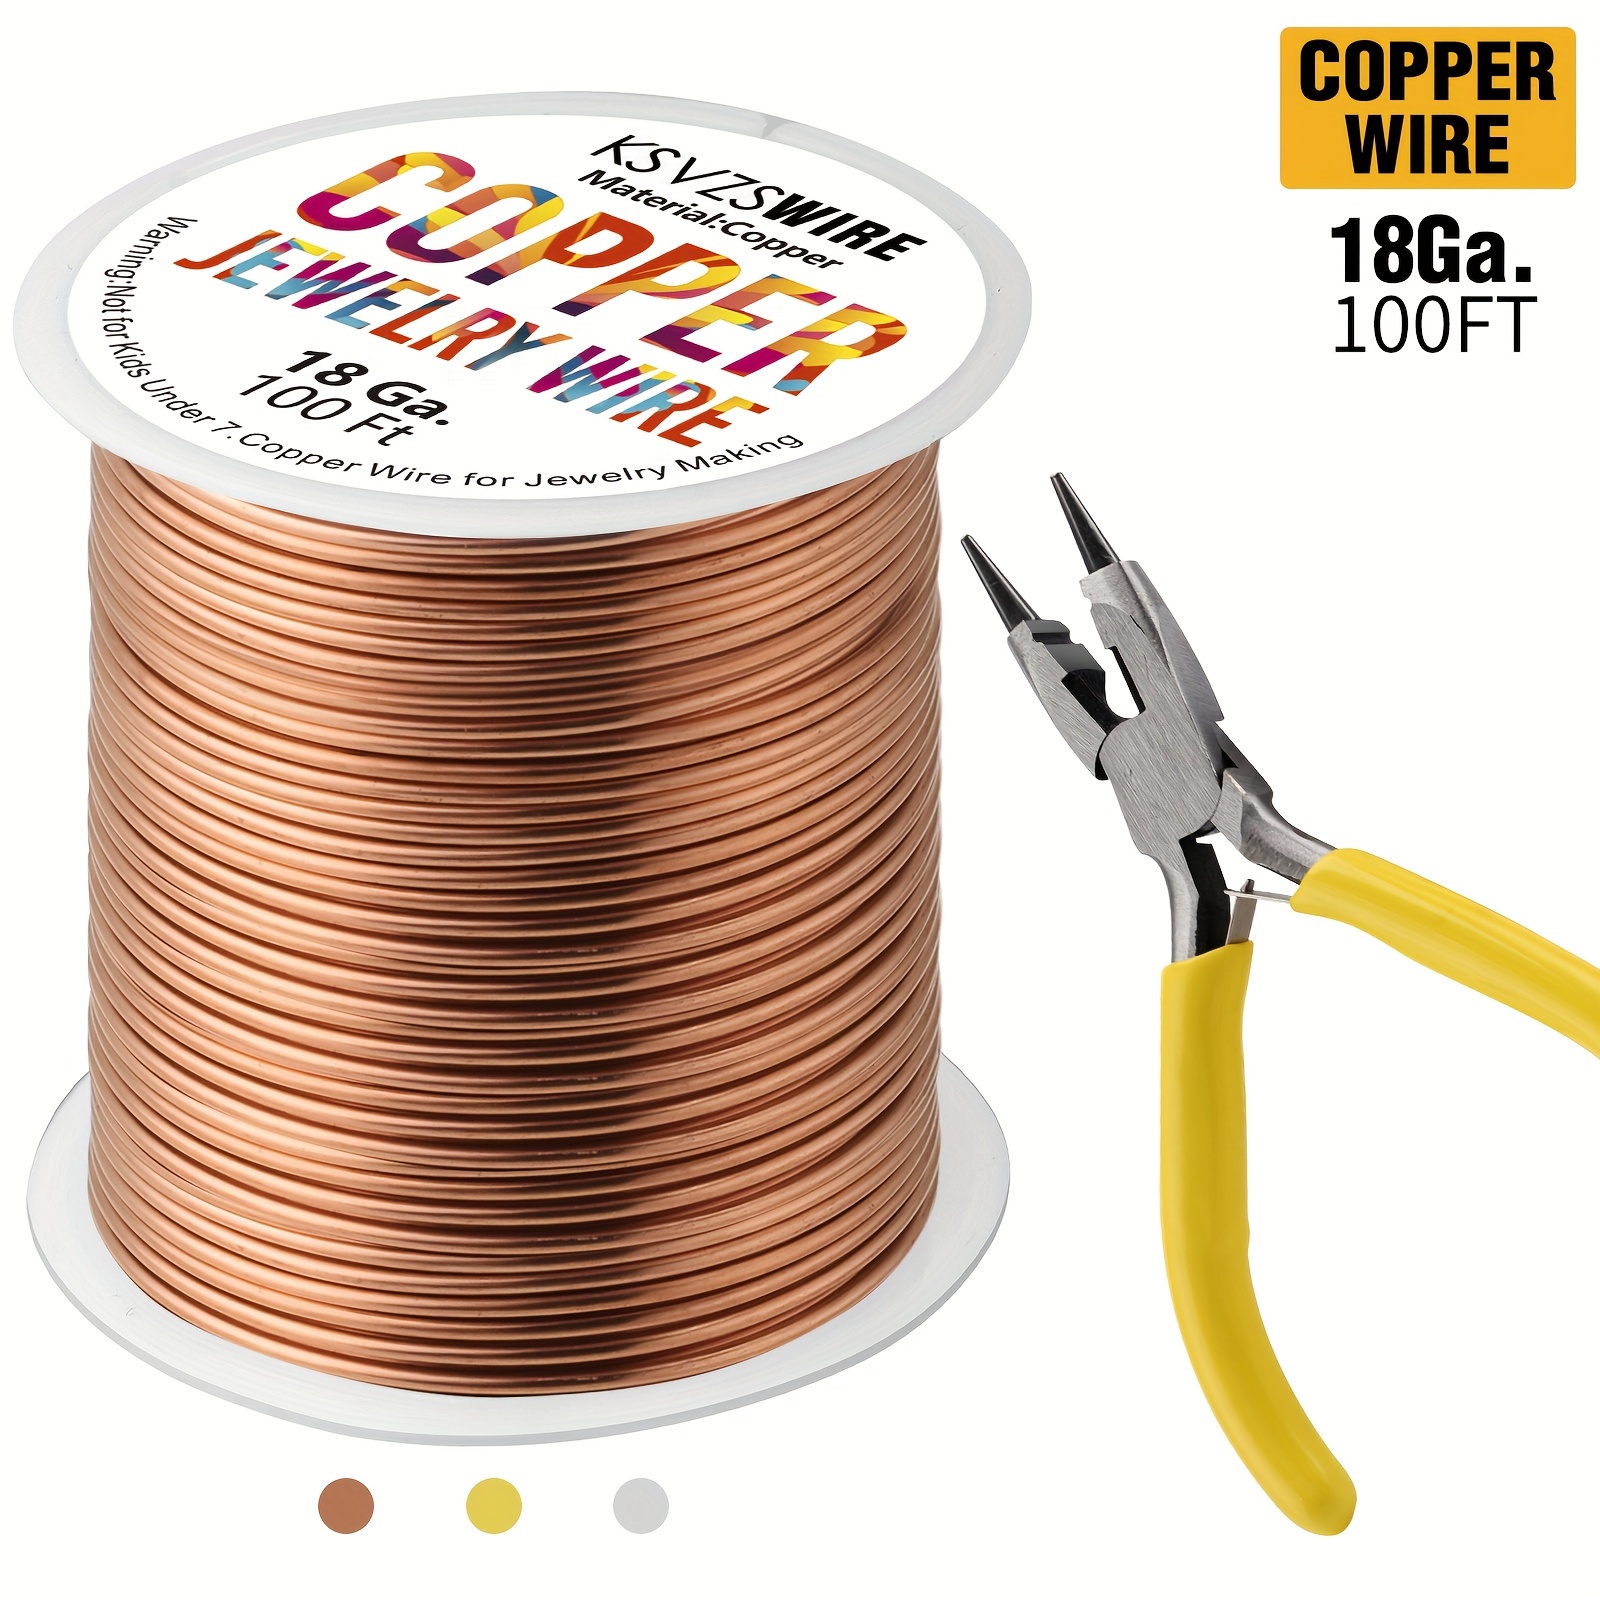 Copper Wire 1.6 Mm Gauge Bare Copper Wire Antique Copper Wire 16g